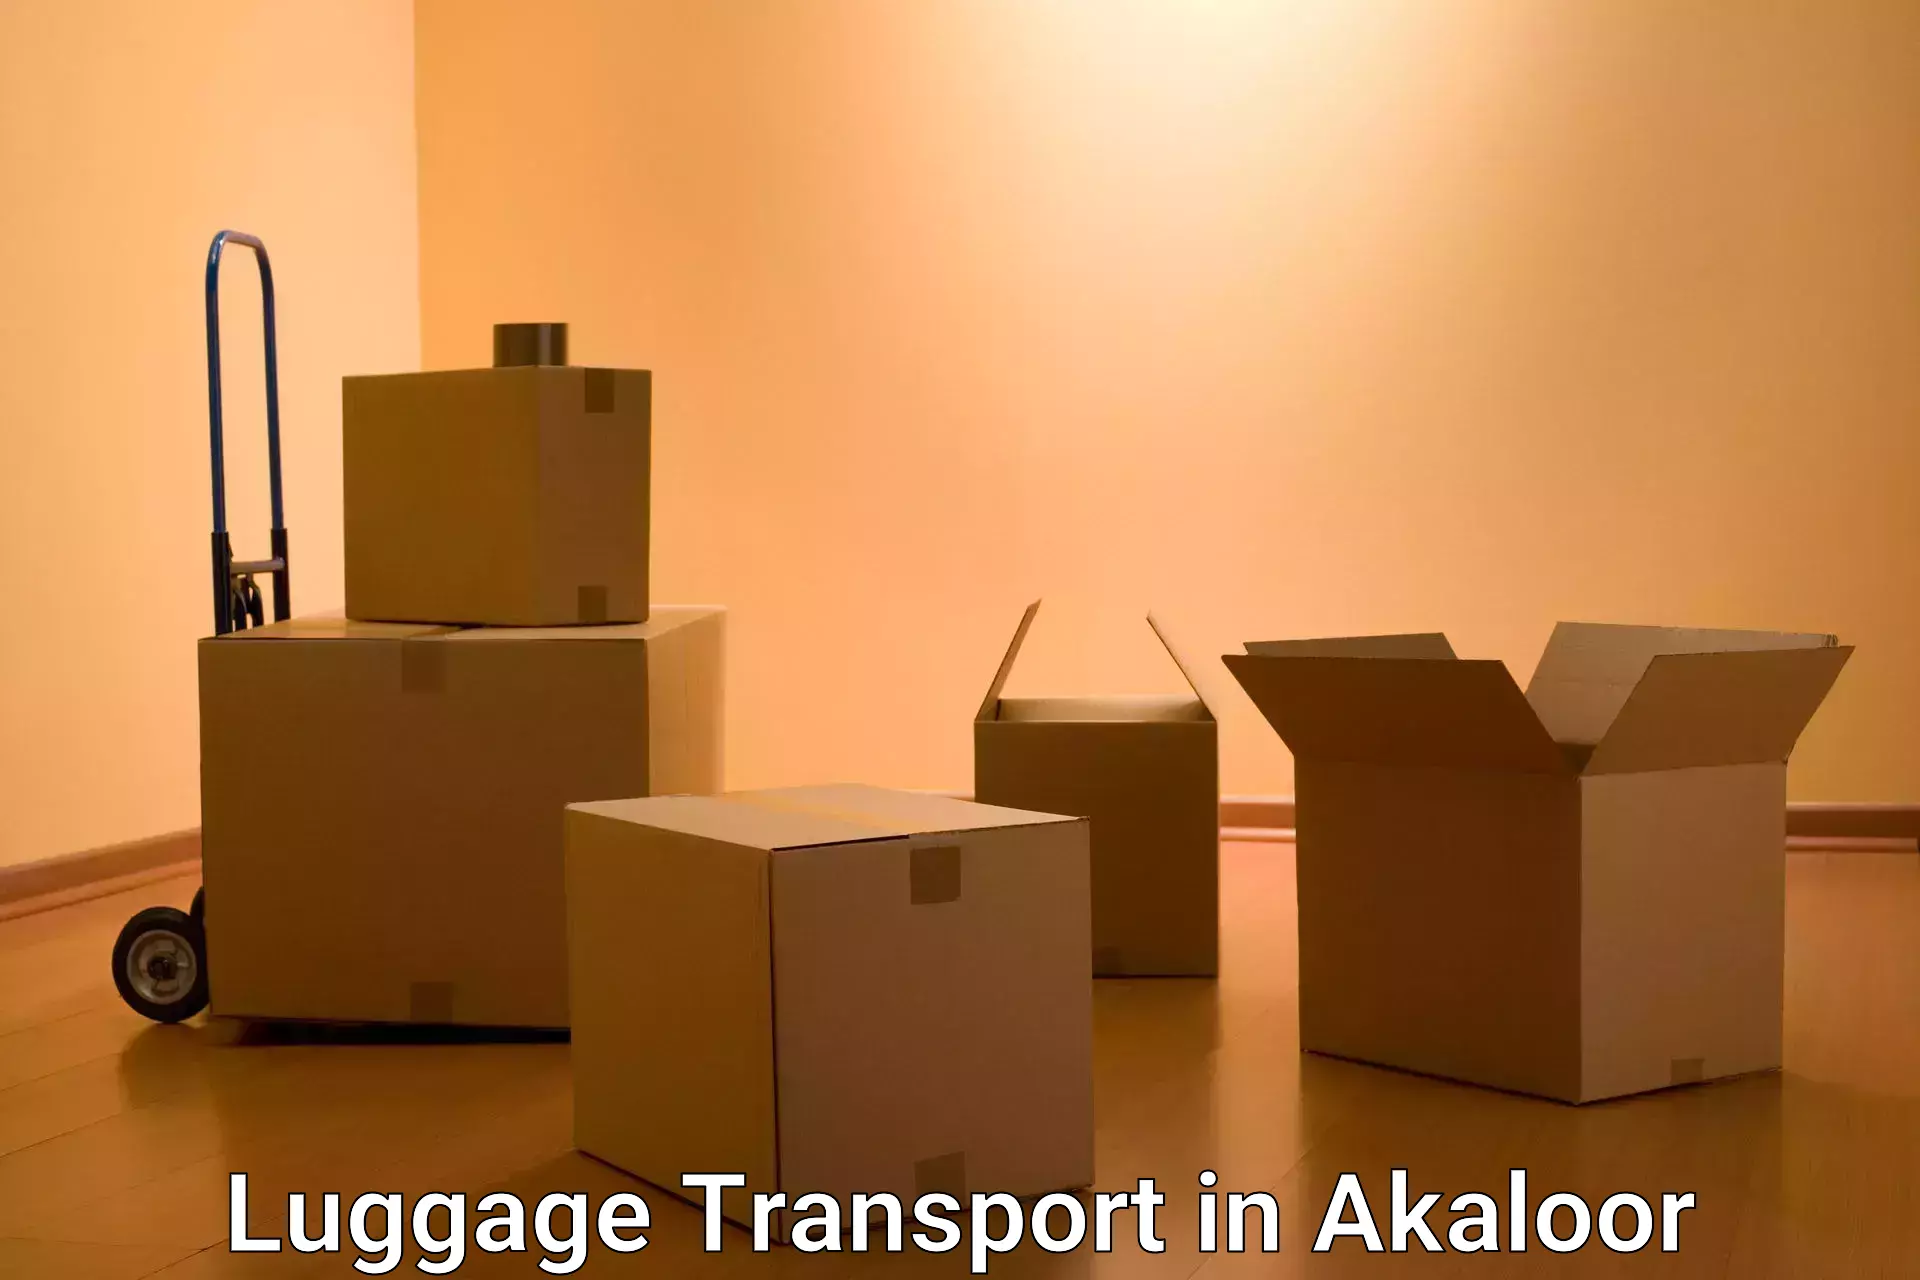 Regional luggage transport in Akaloor